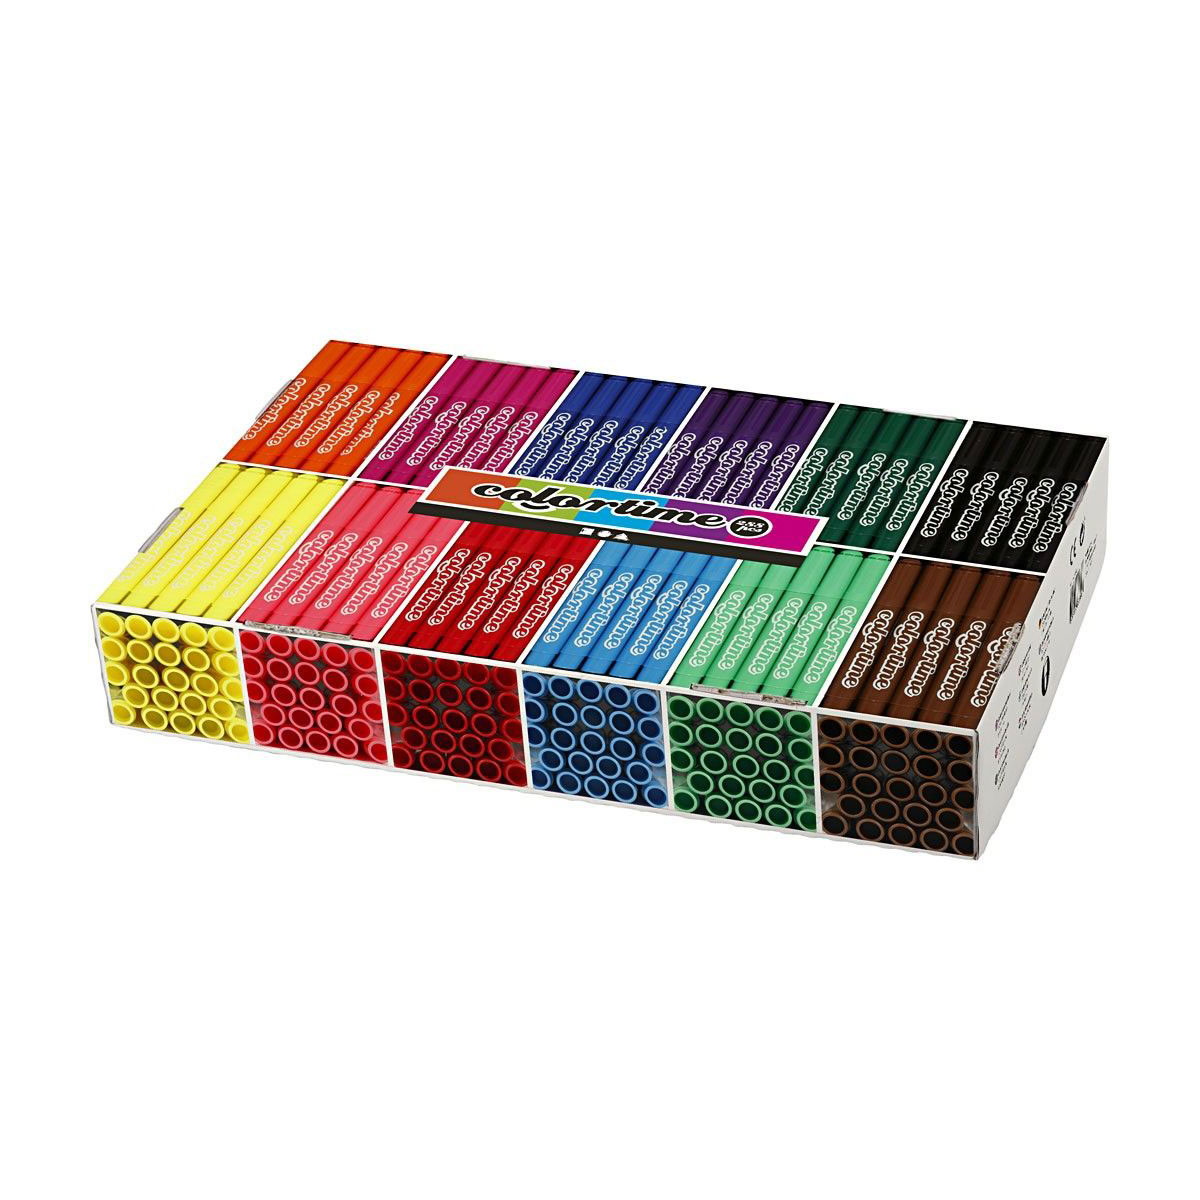 Grootverpakking met 12x24 Gekleurde Jumbo Stiften